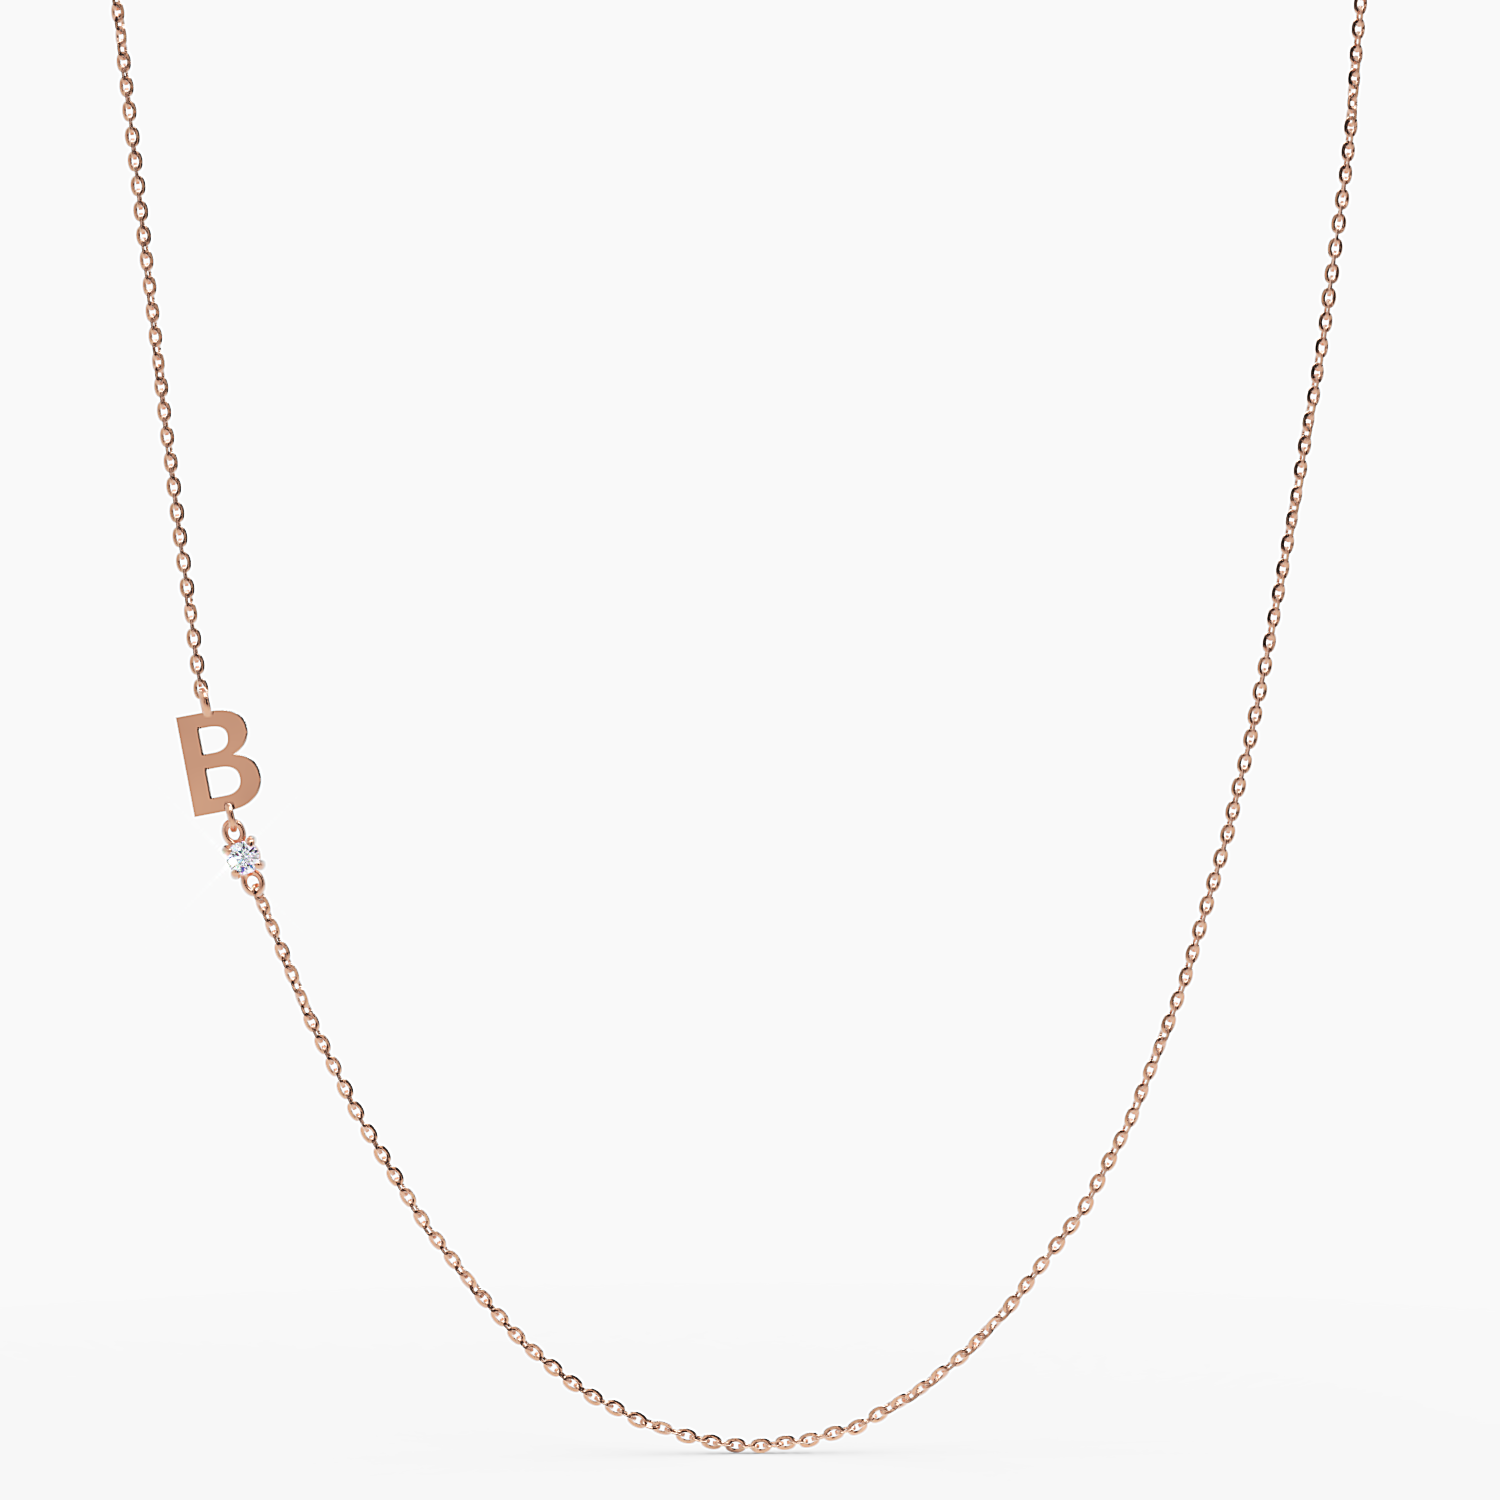 Sideways Initial B Necklace with Diamond